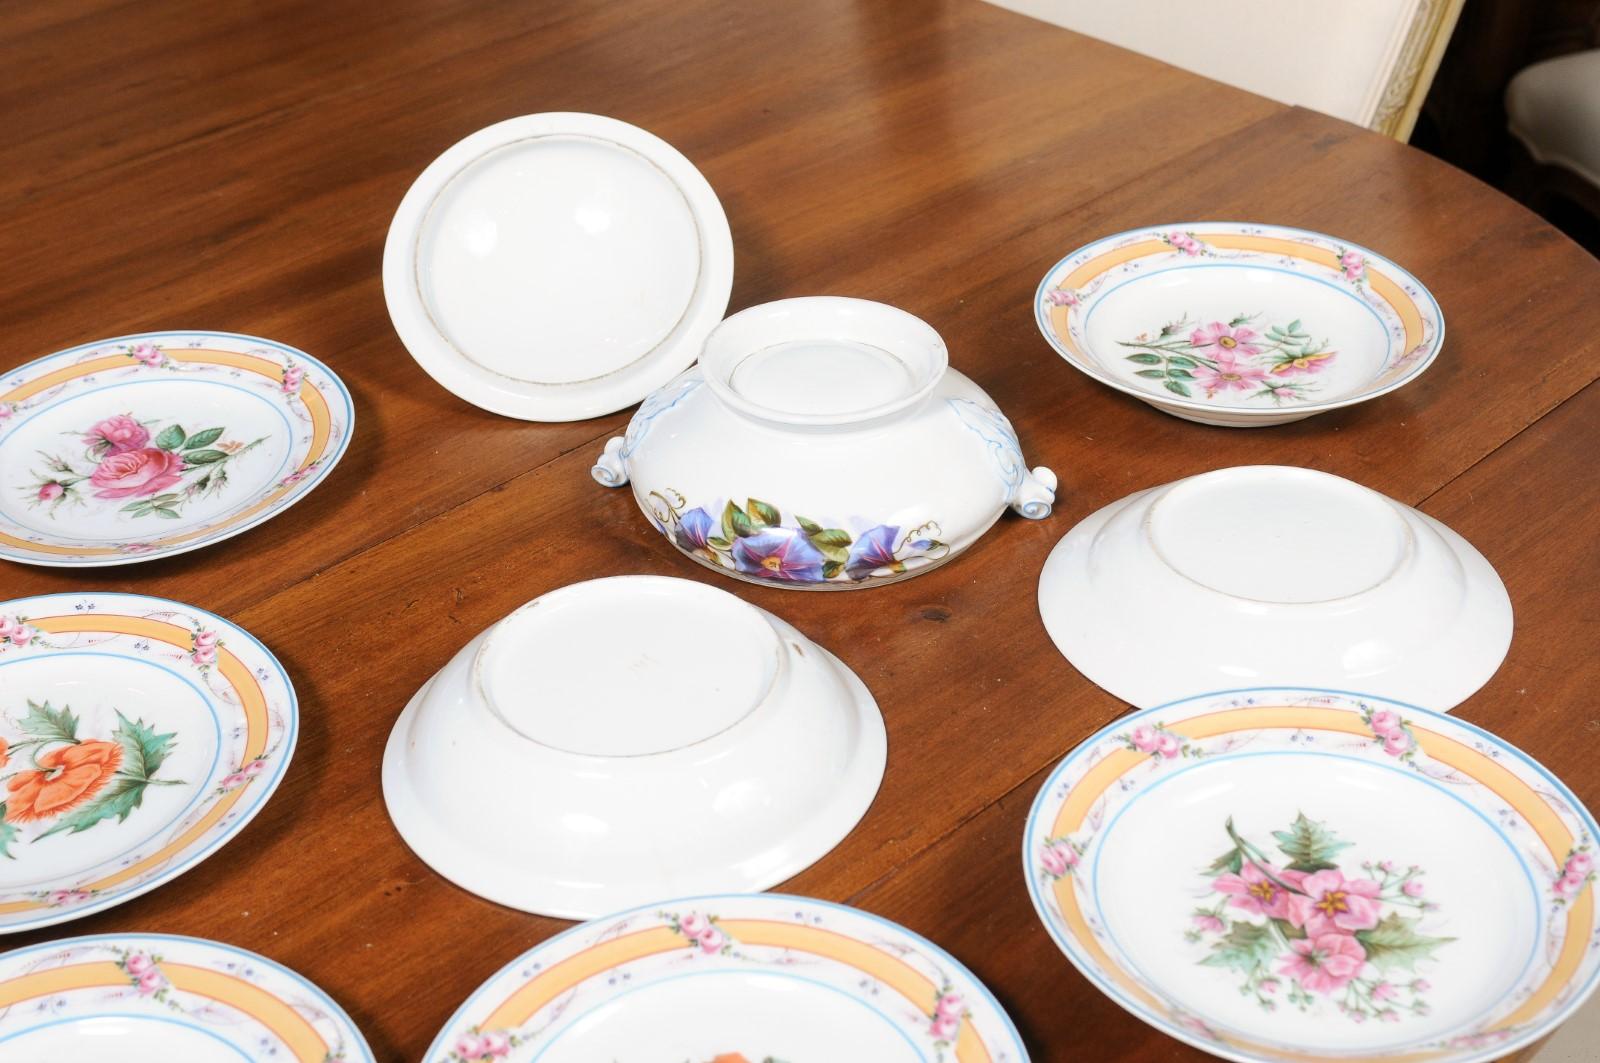 Porcelaine de Paris 19th Century Floral Dish Set with Casserole and Plates 9